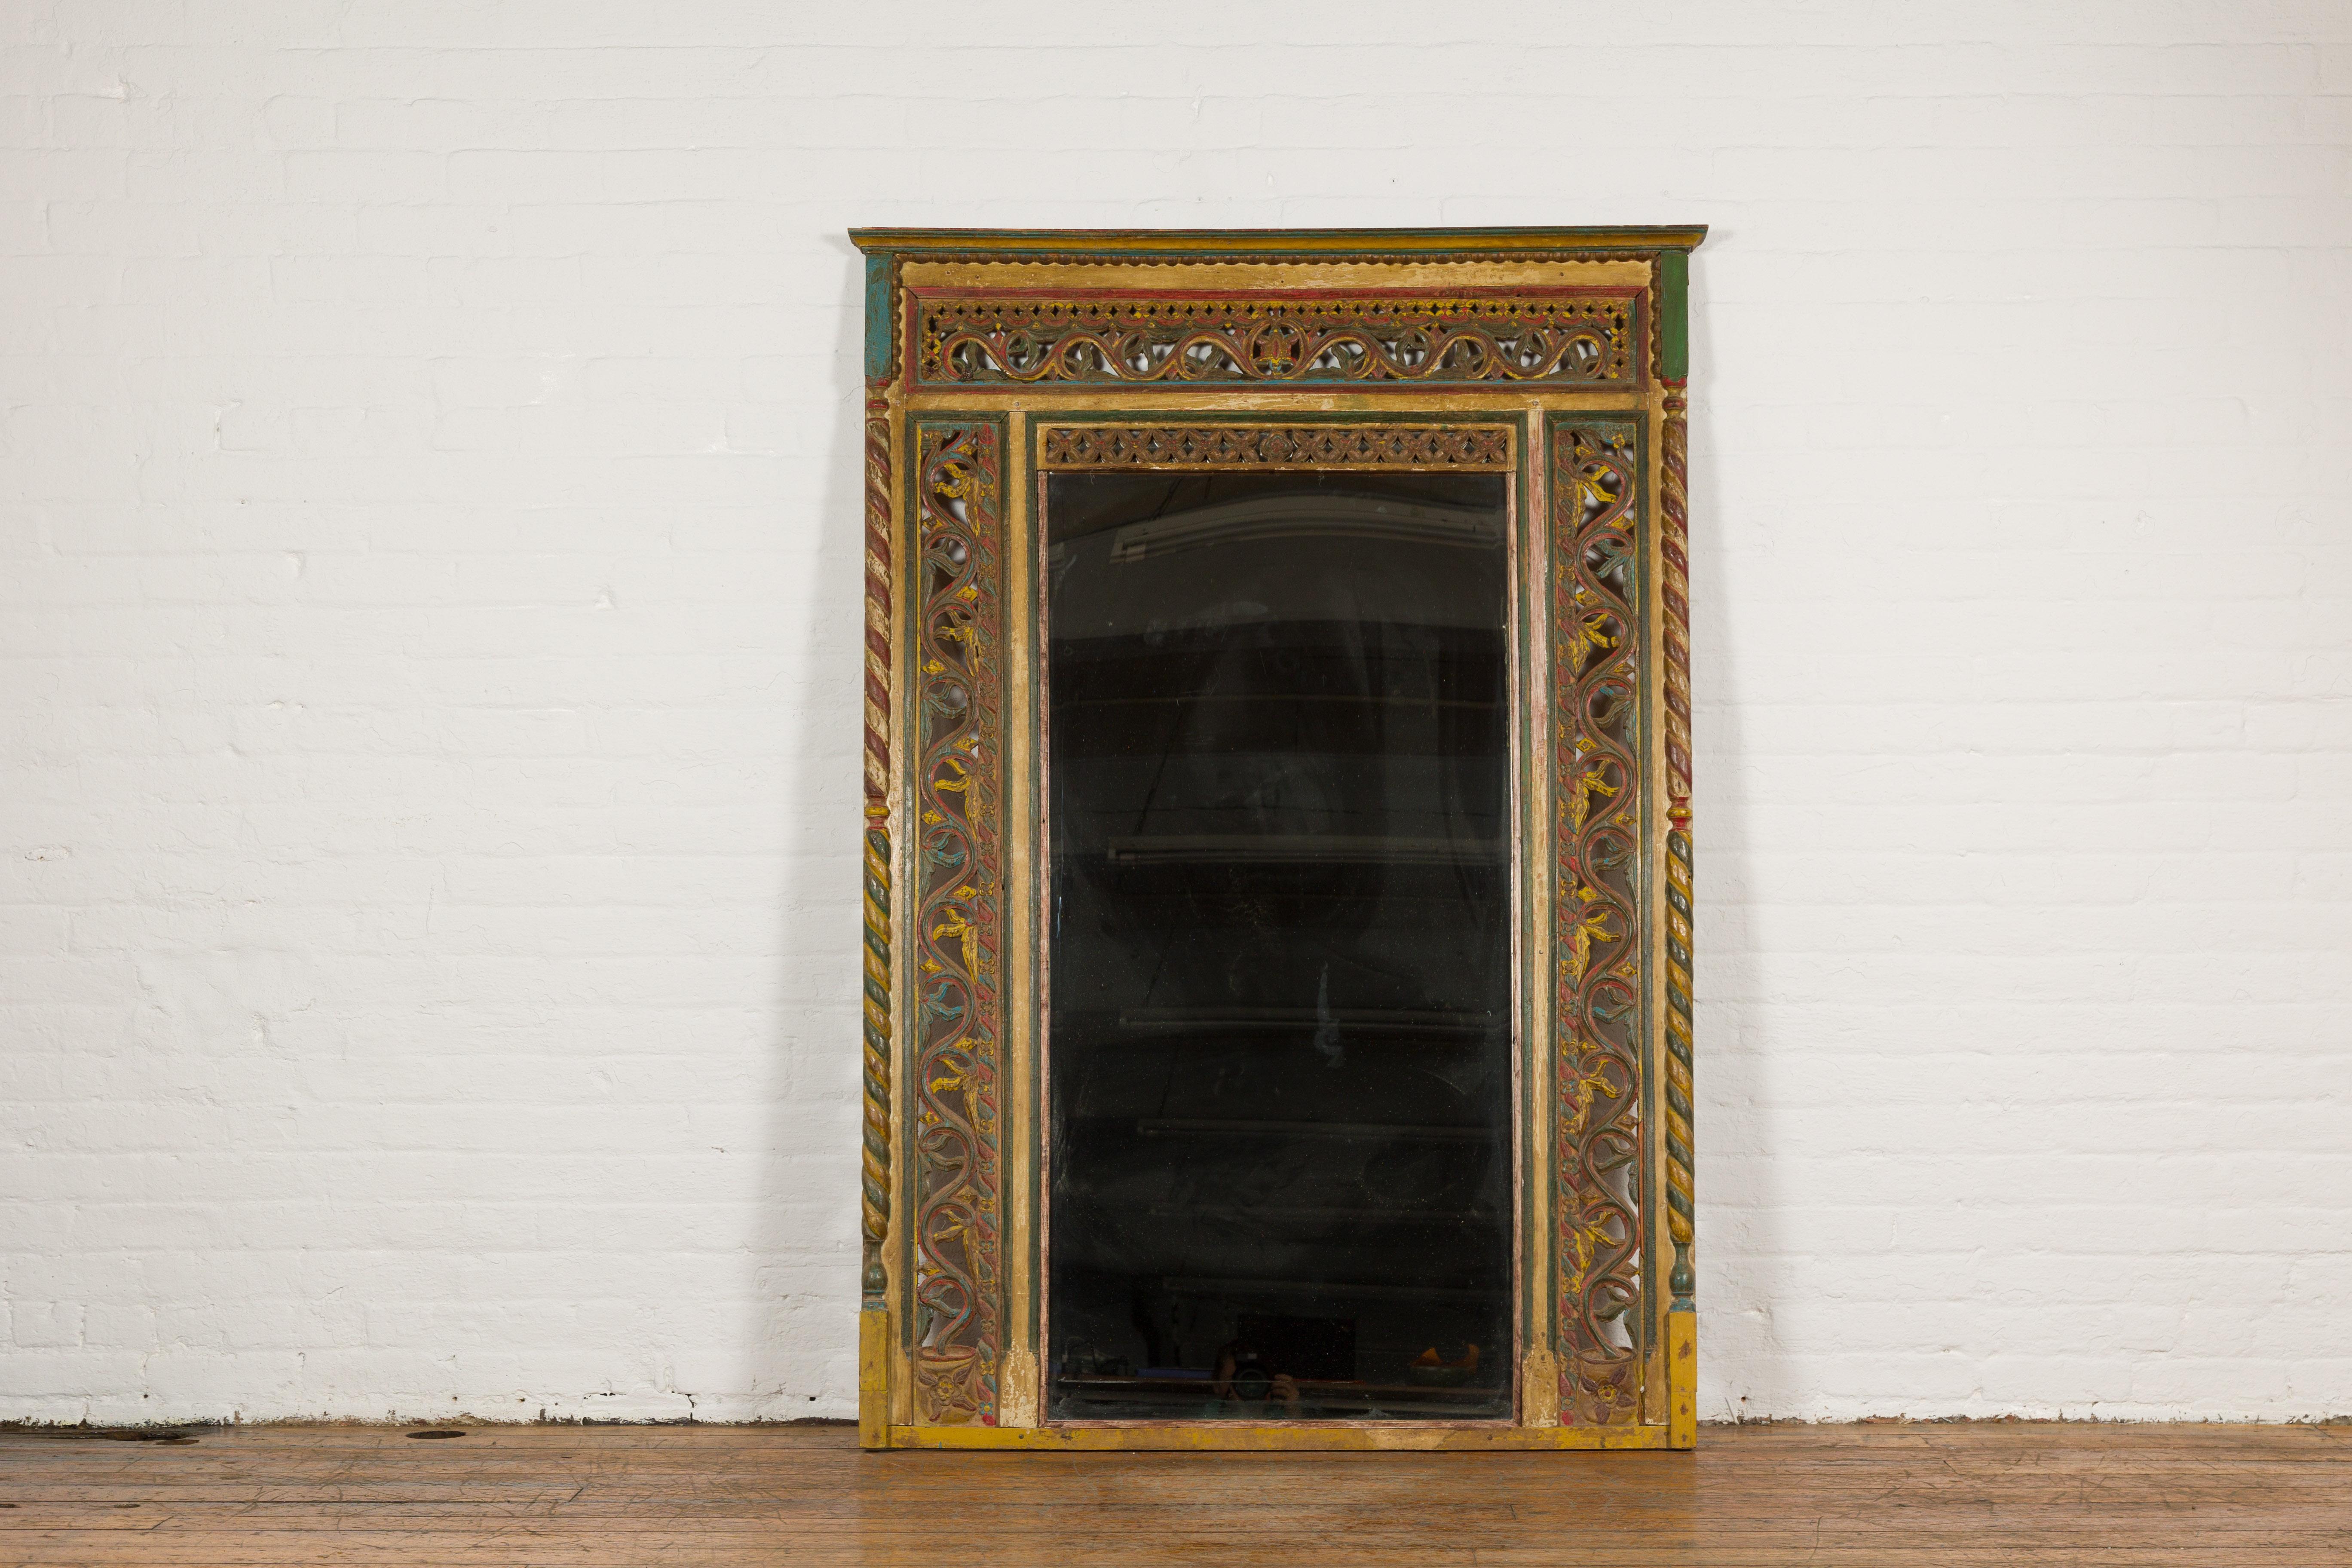 Ein altes indisches, reich geschnitztes, grün, rot und gelb bemaltes Fenster, das zu einem Trumeau-Spiegel verarbeitet wurde. Wir stellen einen prächtigen indischen Trumeau-Spiegel vor, der meisterhaft aus einem wunderschön geschnitzten und bunt